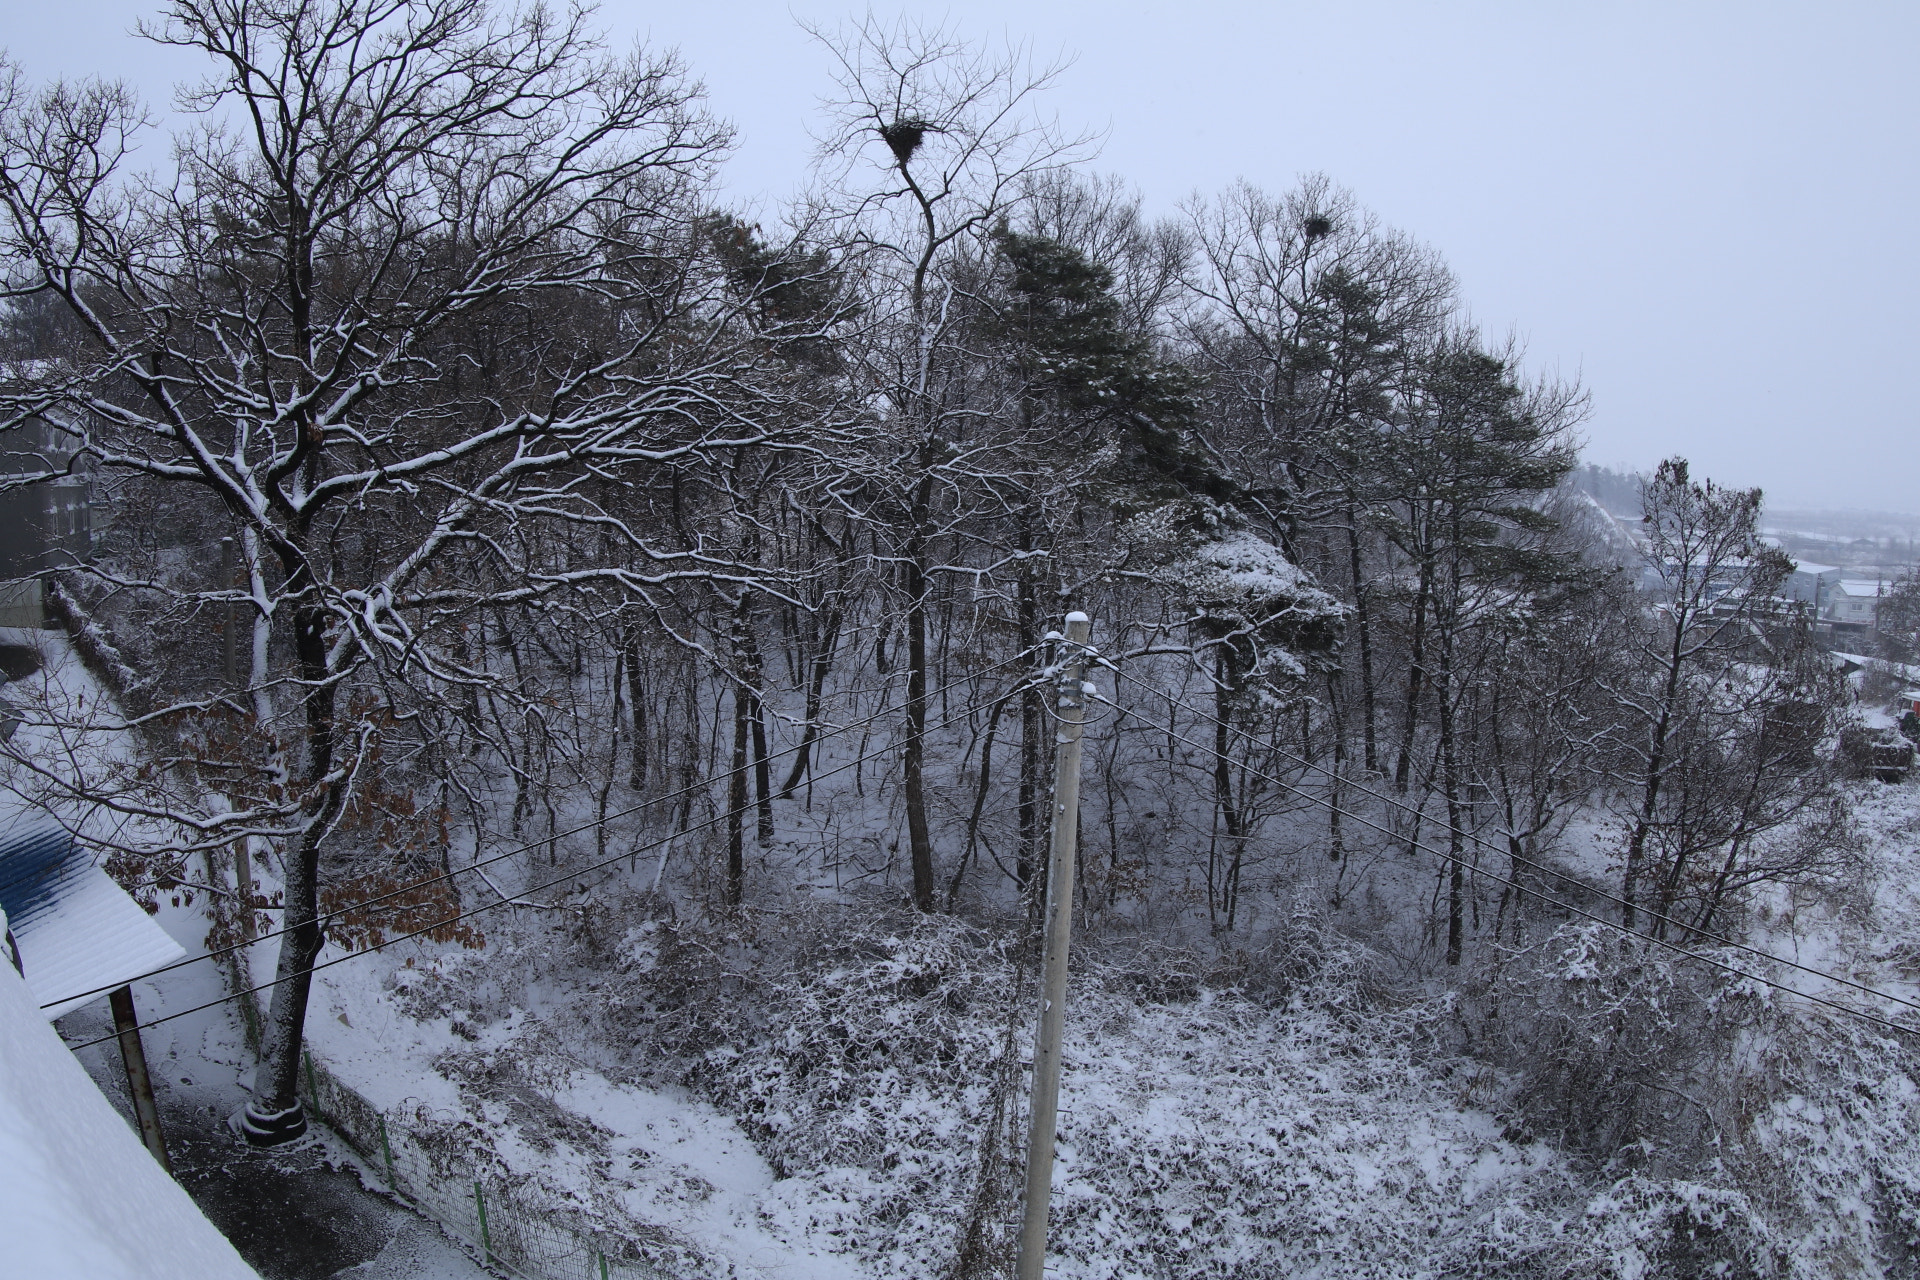 Canon EOS 80D sample photo. Winter photography